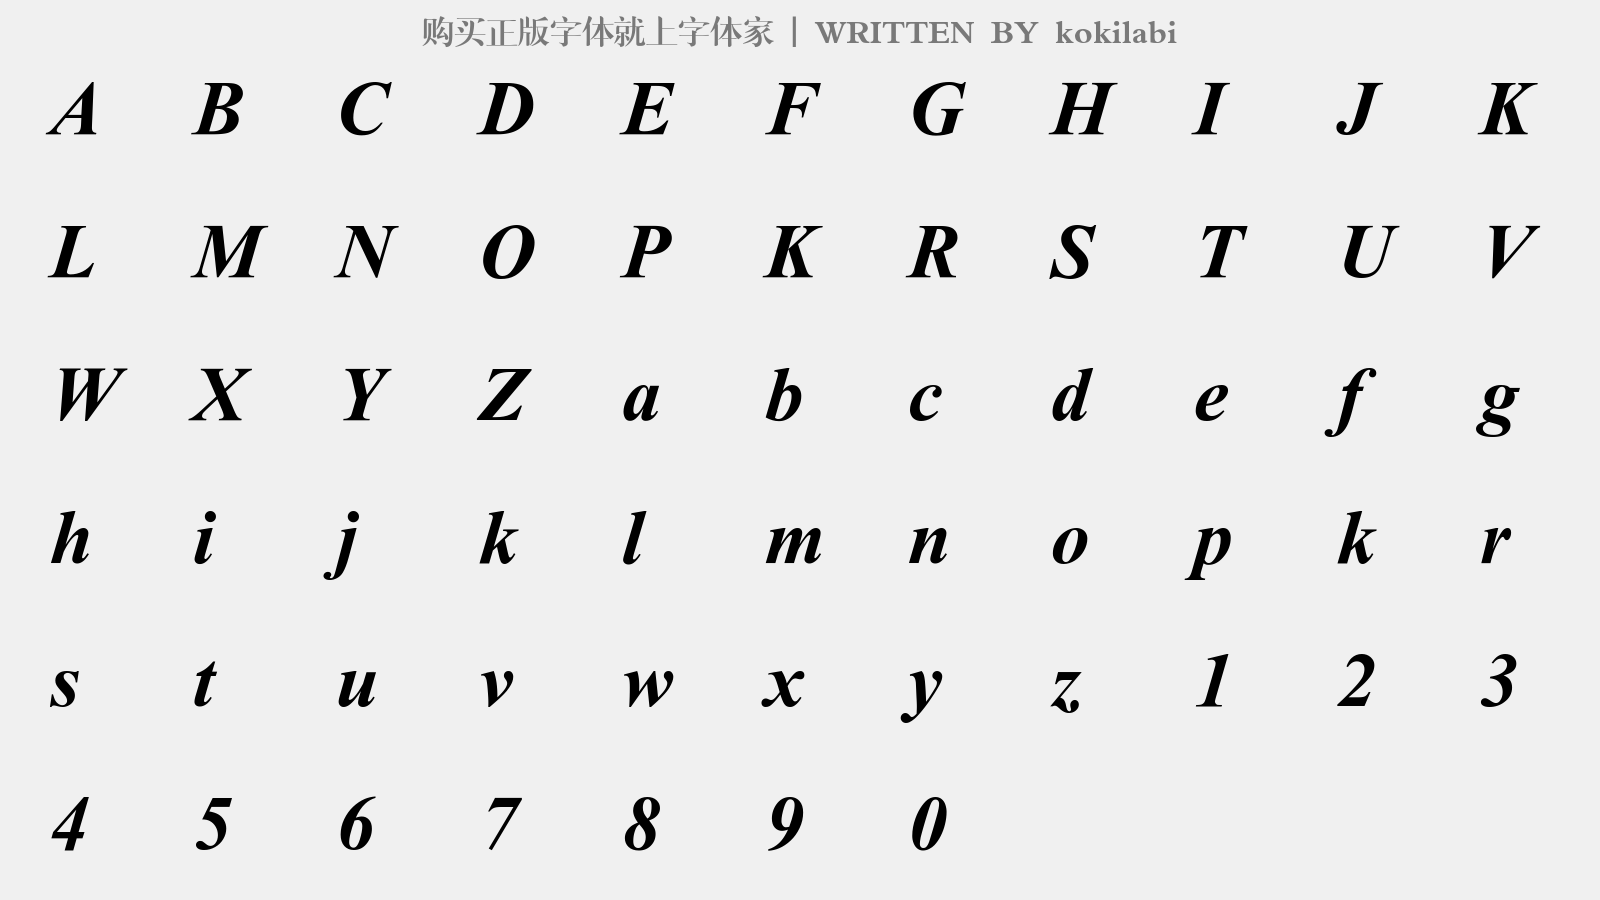 kokilabi - 大写字母/小写字母/数字